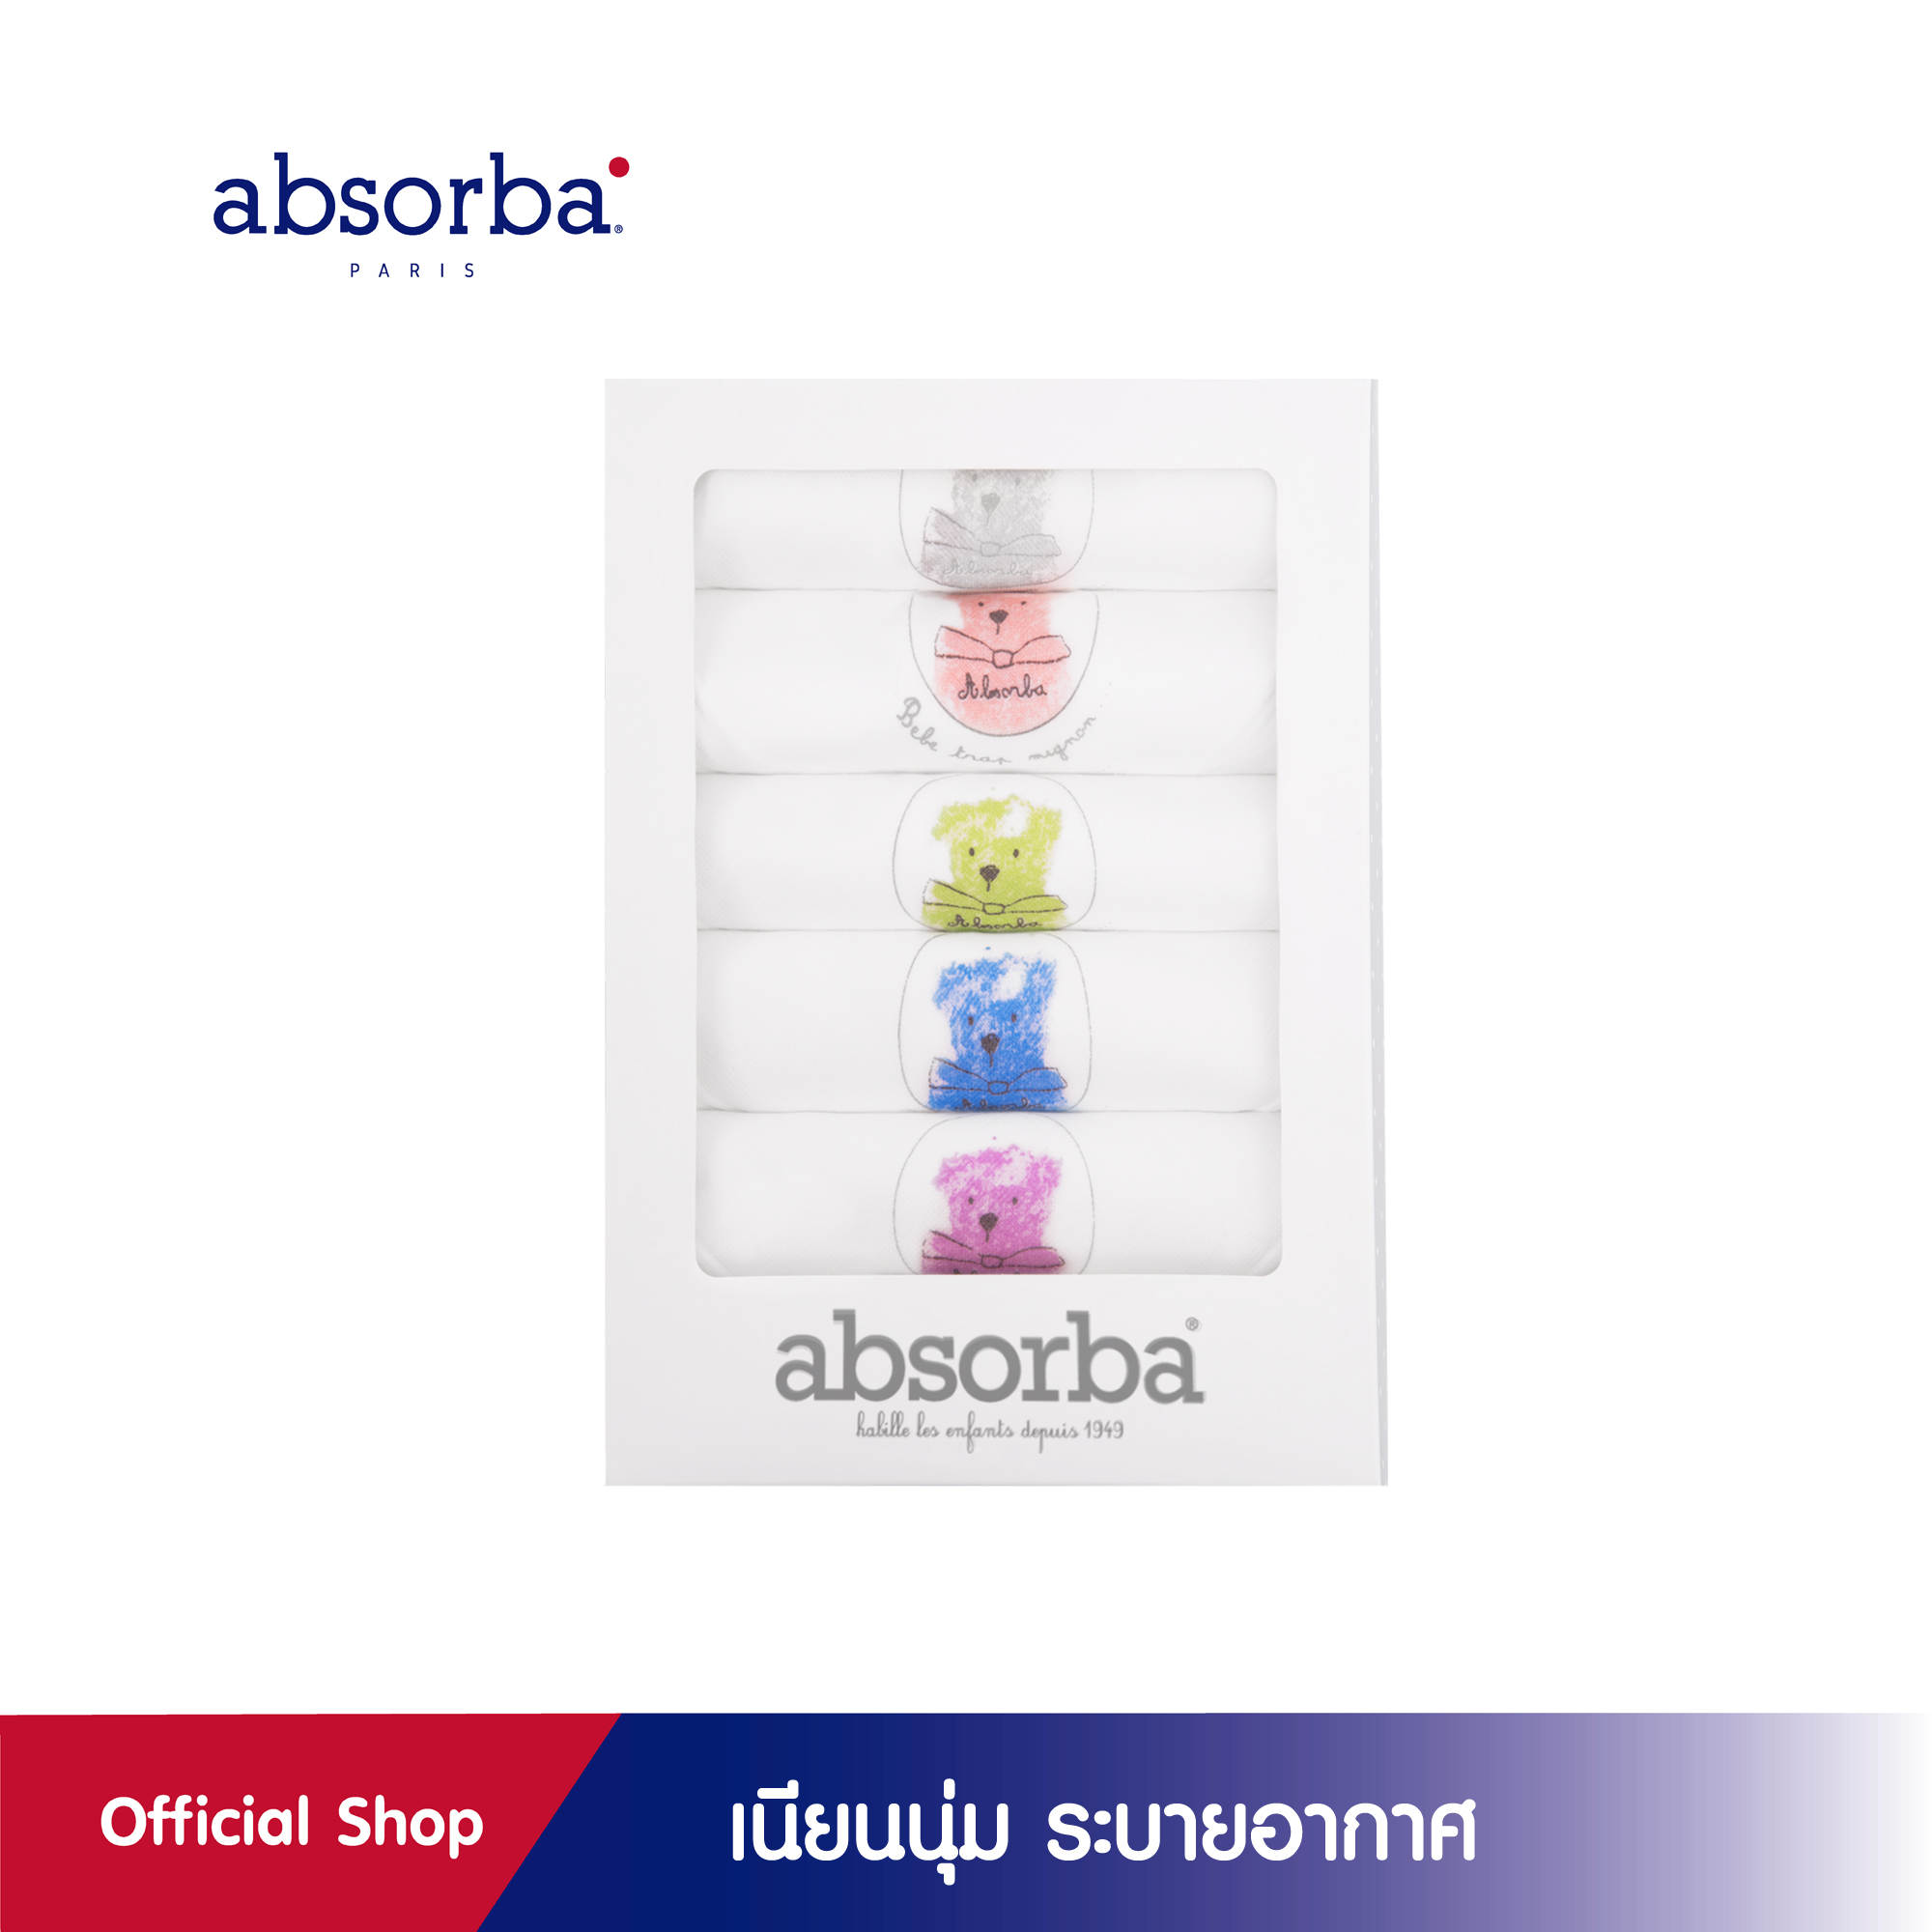 absorba(แอ็บซอร์บา)ผ้าอ้อมผ้าสาลู ทอ 2 ชั้น พิมพ์ลายหมีมุมผ้า ขนาด 27x 27 นิ้ว สีขาว แพ็ค 6 ผืน - R6G141WH00